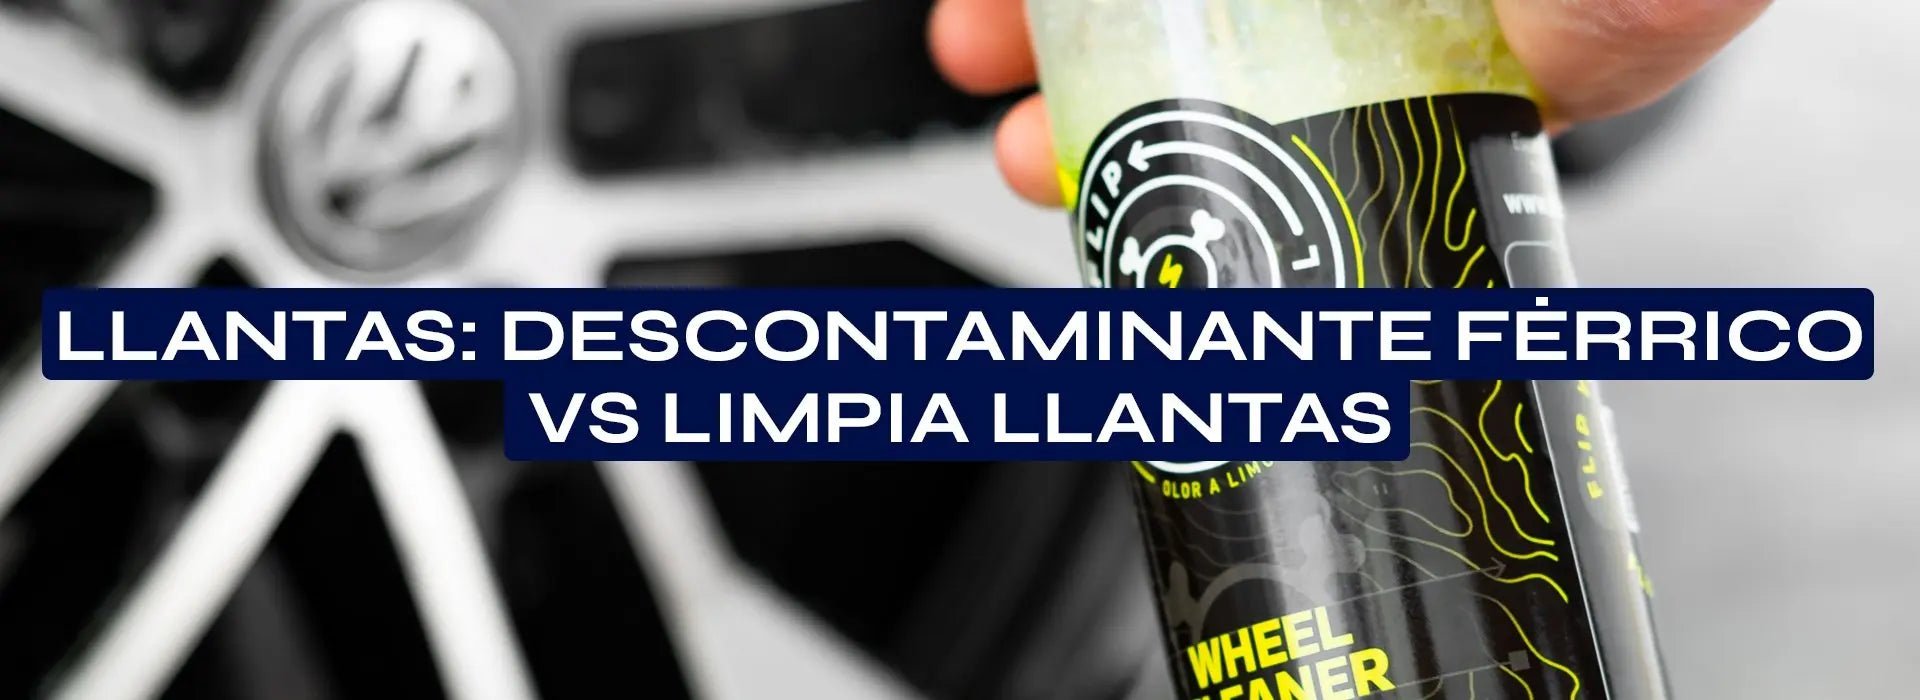 Llantas: Descontaminante Férrico VS Limpia Llantas – Flip Detail®